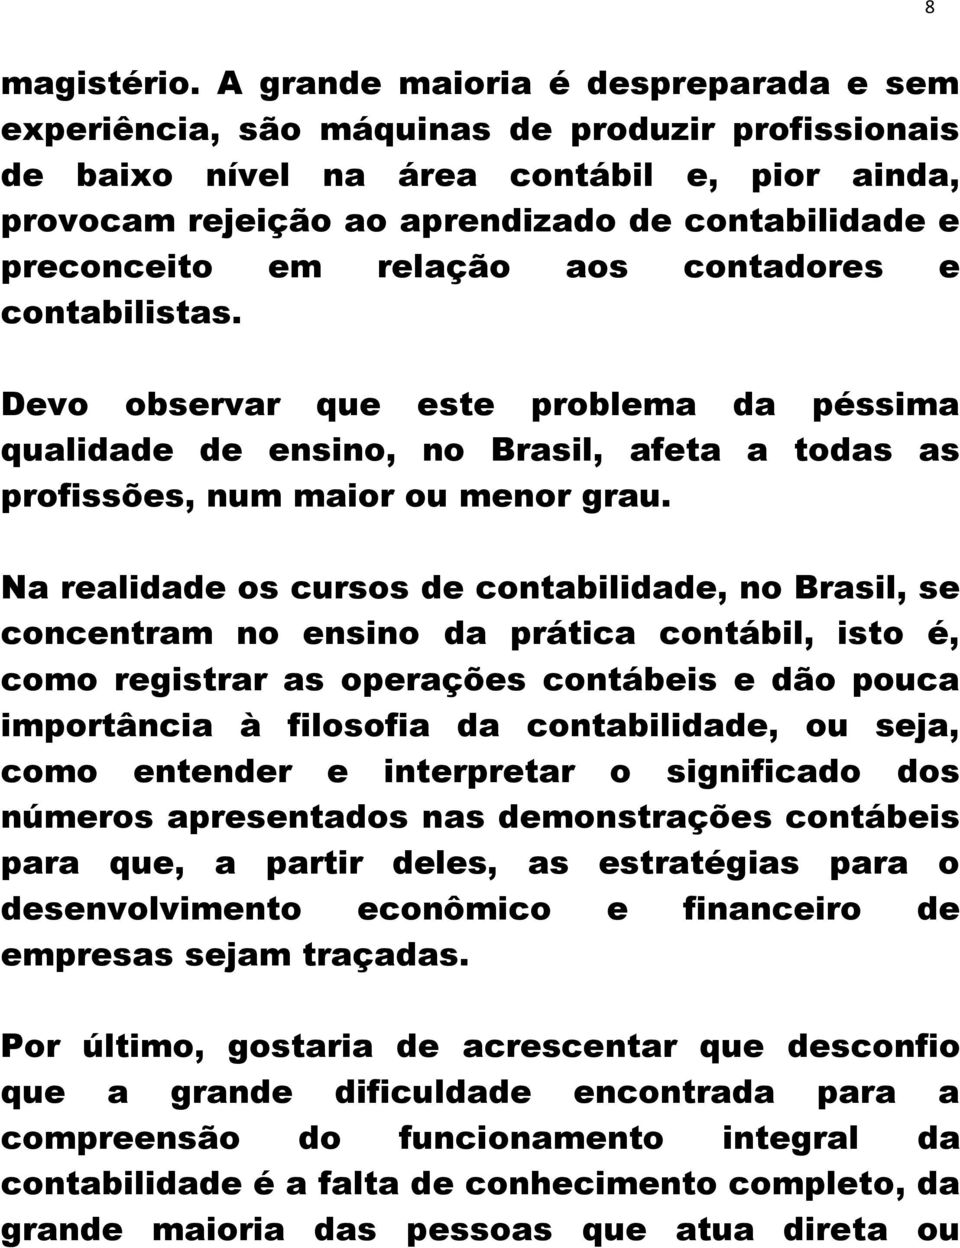 preconceito em relação aos contadores e contabilistas. Devo observar que este problema da péssima qualidade de ensino, no Brasil, afeta a todas as profissões, num maior ou menor grau.